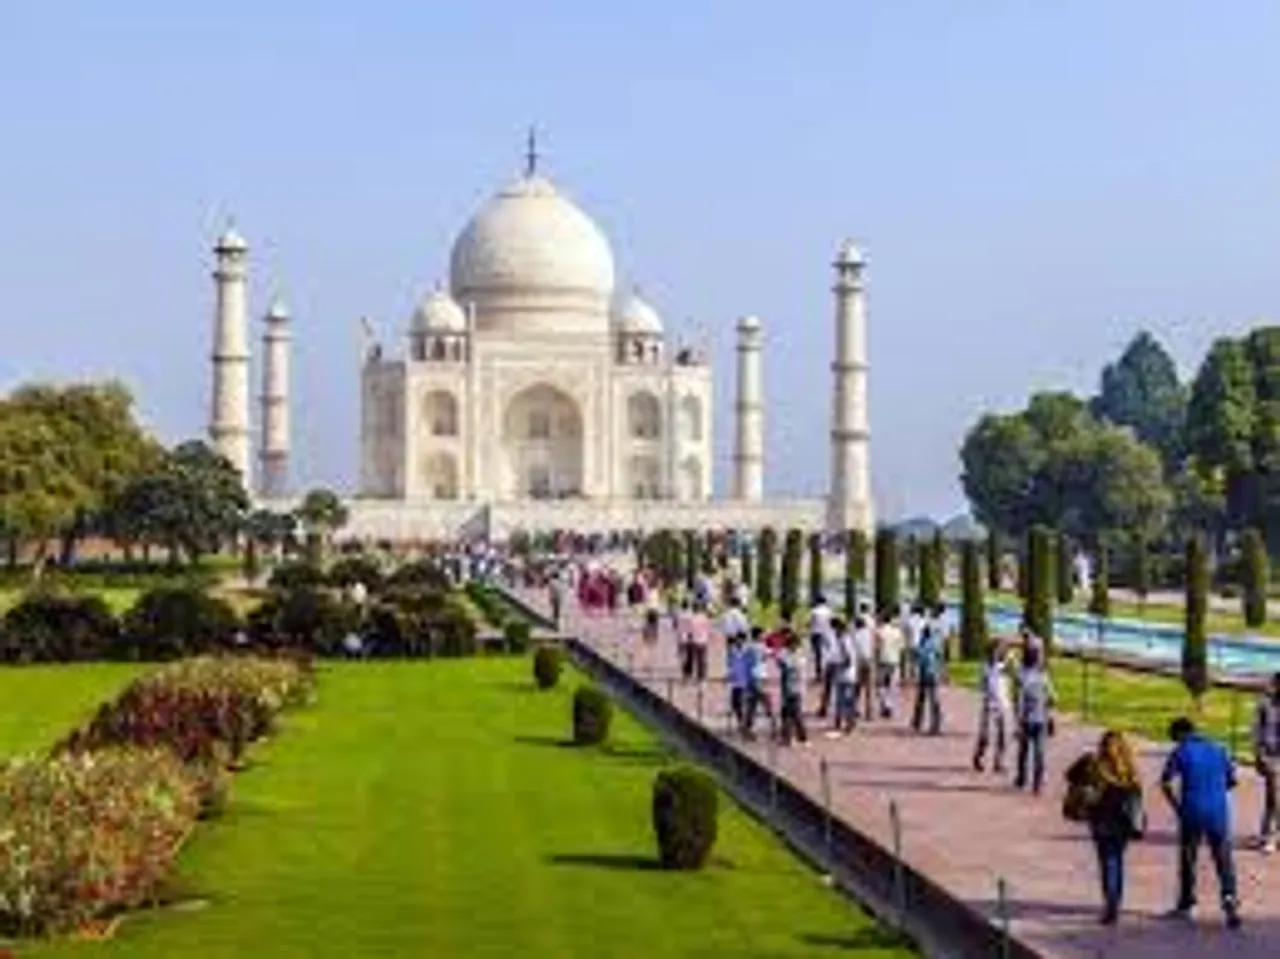 Free Wi-Fi at Taj Mahal now!